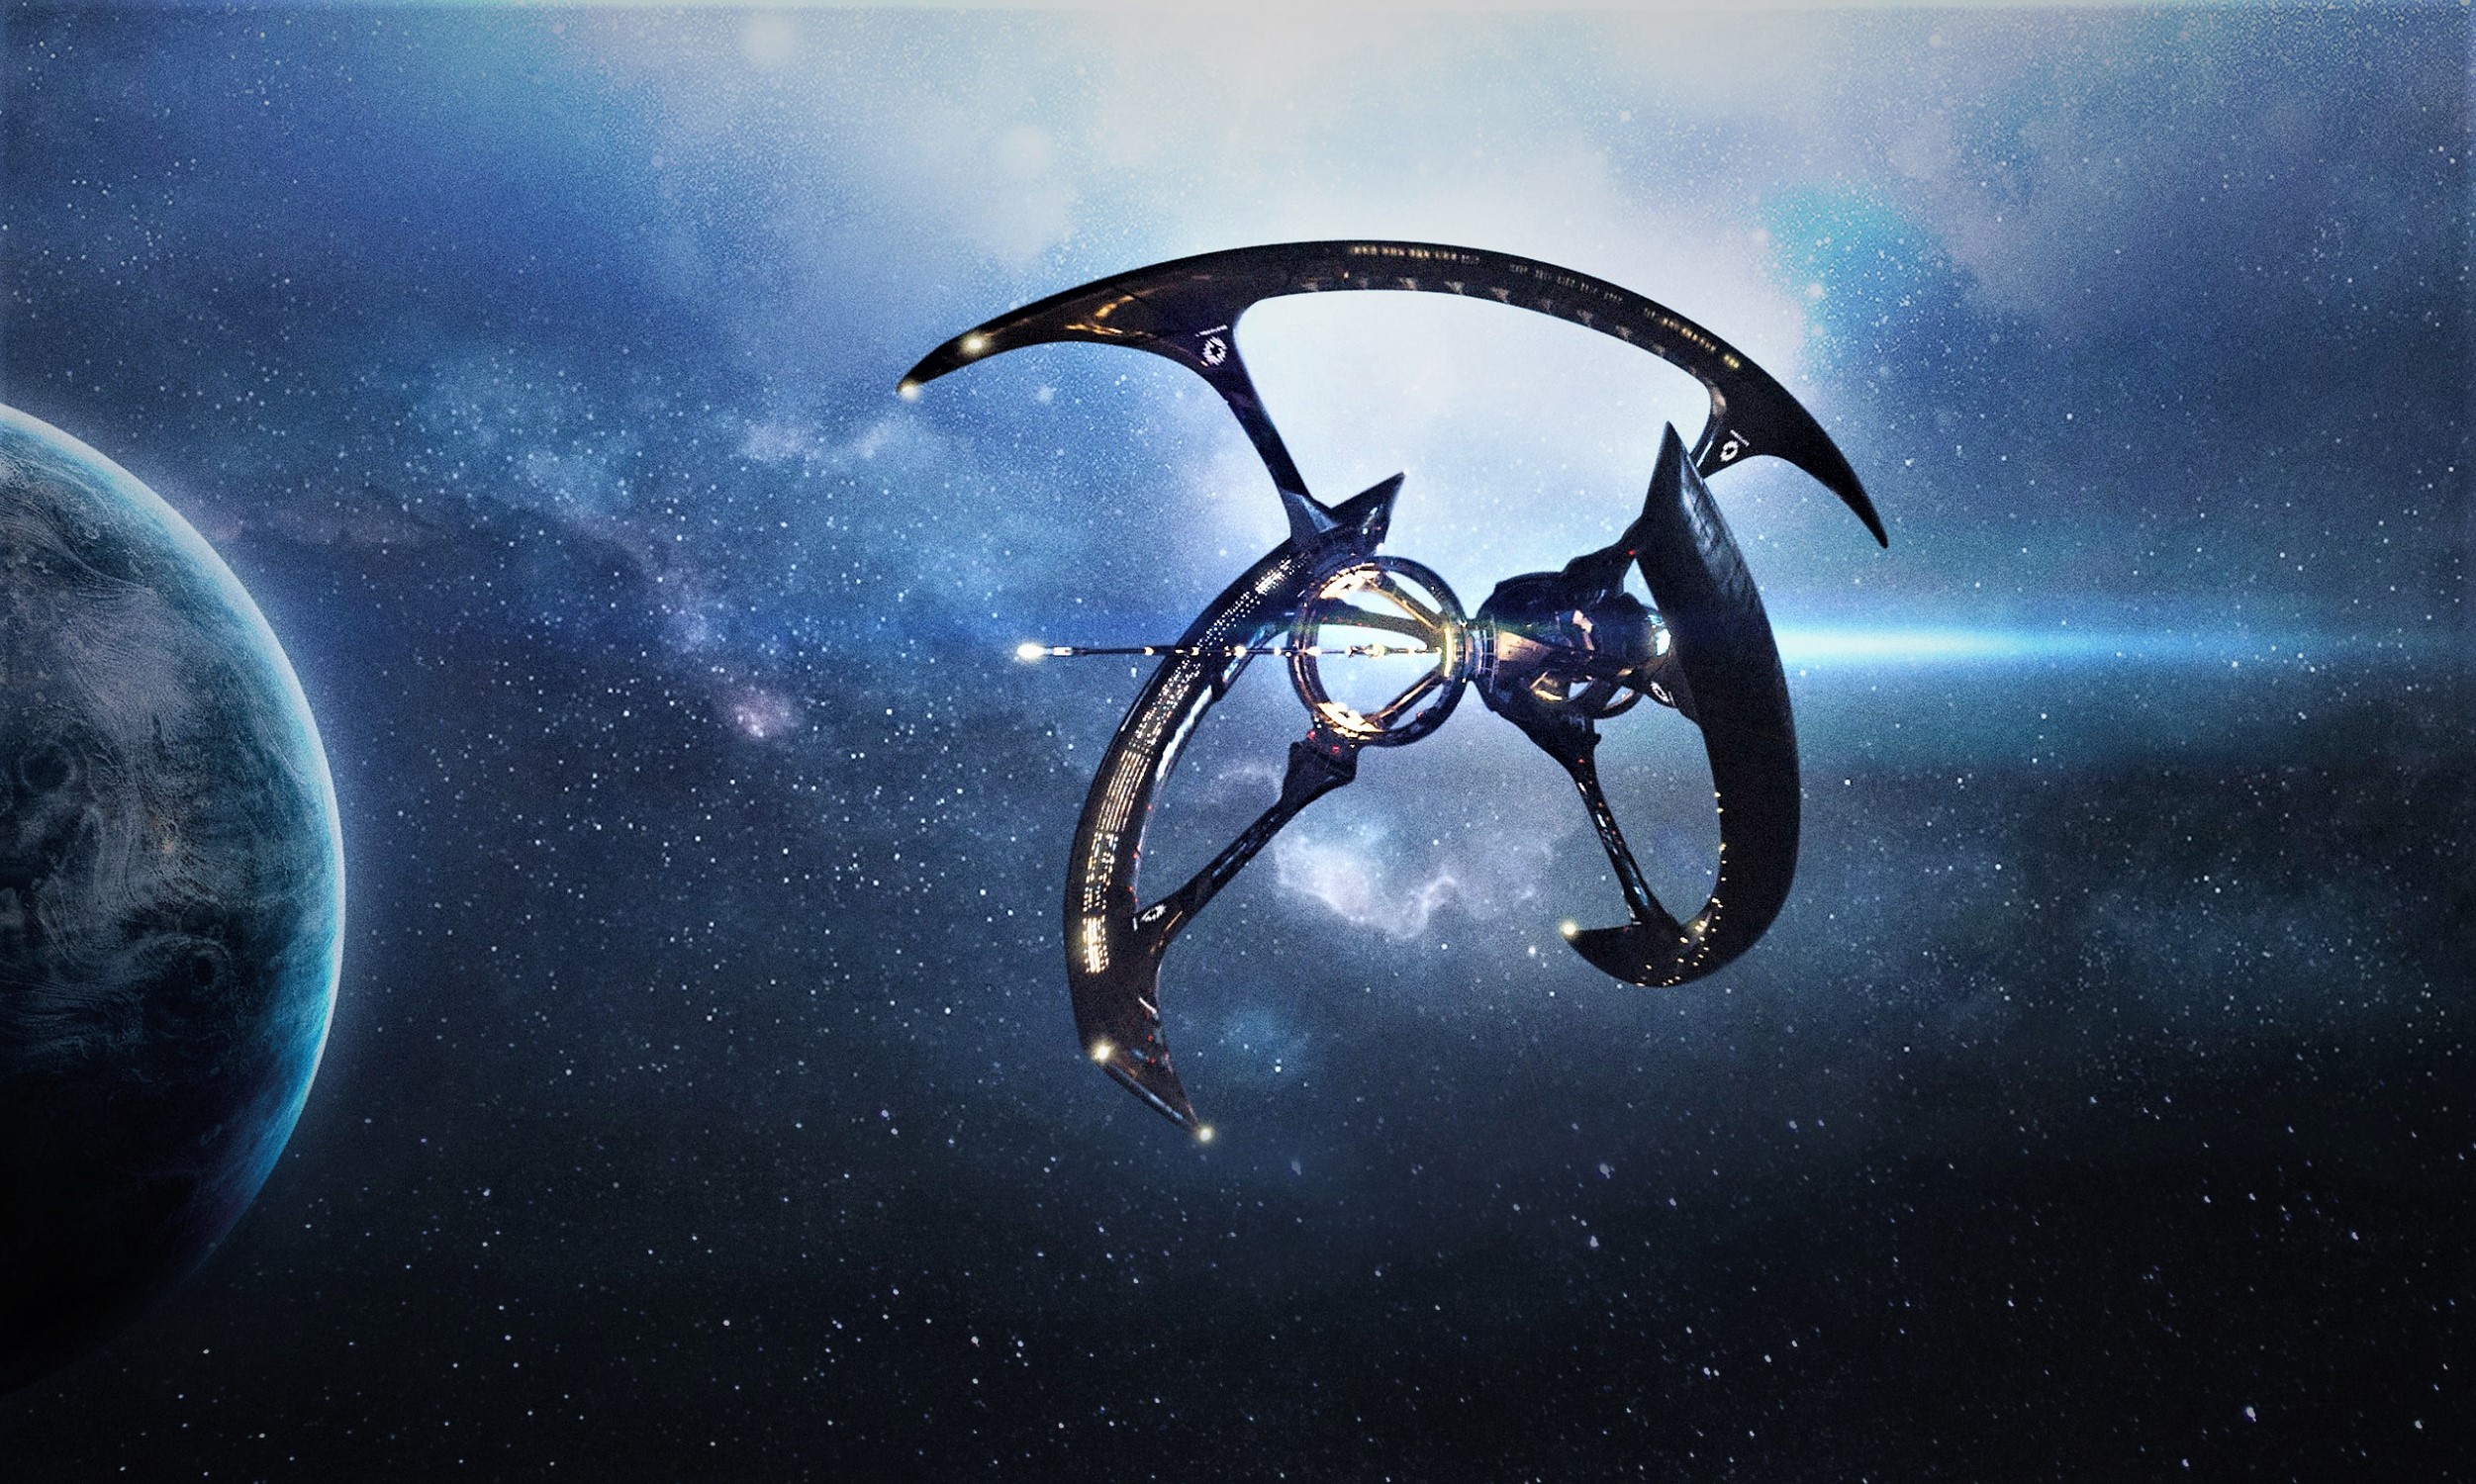 Asgardia: planean salvar la Humanidad en «Arcas» espaciales (Video)